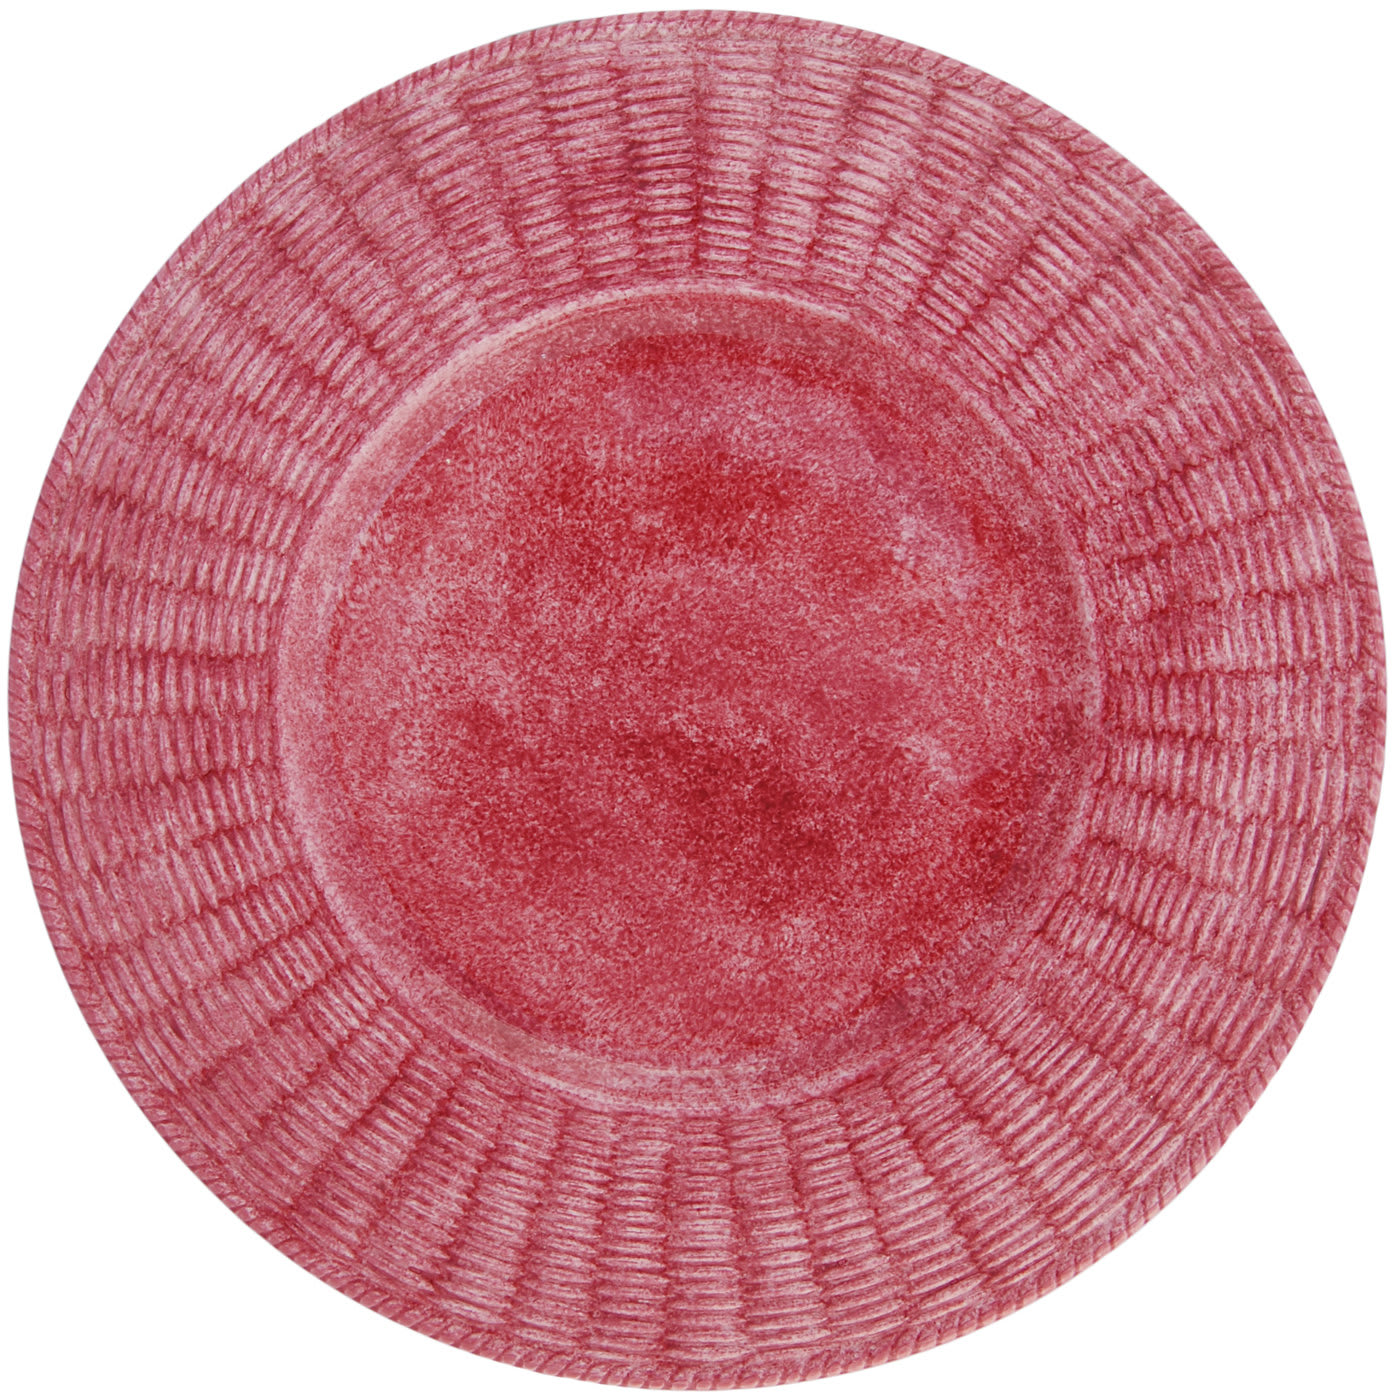 Set of 2 Fiori Pink Ceramic Plates - Este Ceramiche